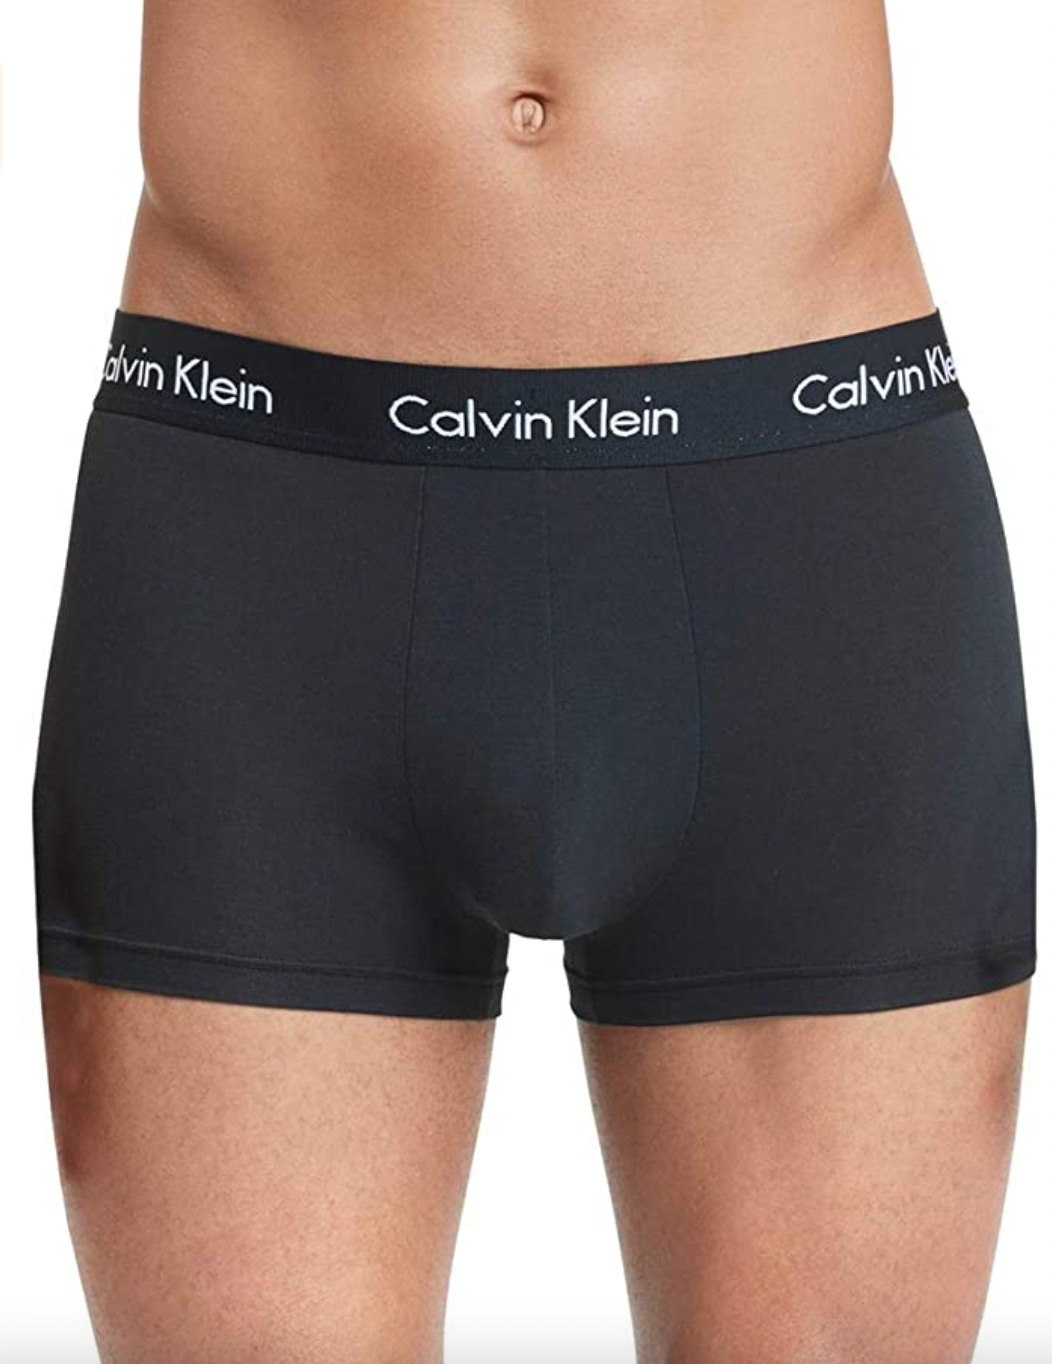 Vast en zeker bouwer vooroordeel Amazon's Black Friday Sale: Best Deals on Calvin Klein Underwear, Hanes &  More | Entertainment Tonight